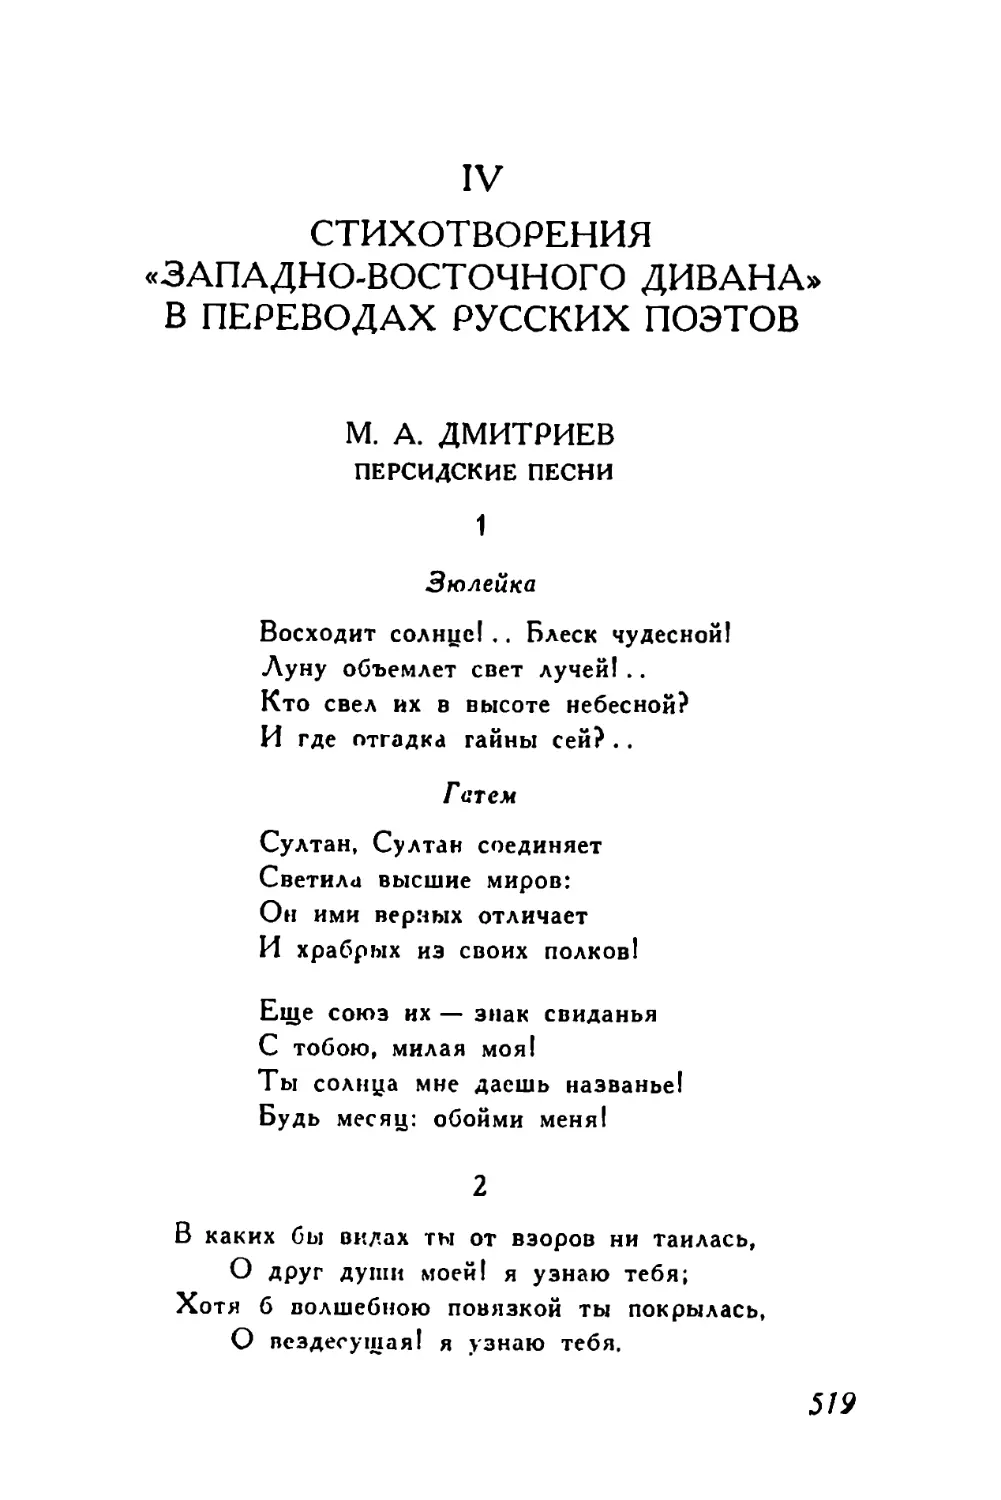 IV. Стихотворения «Западно-восточного дивана» в переводах русских поэтов